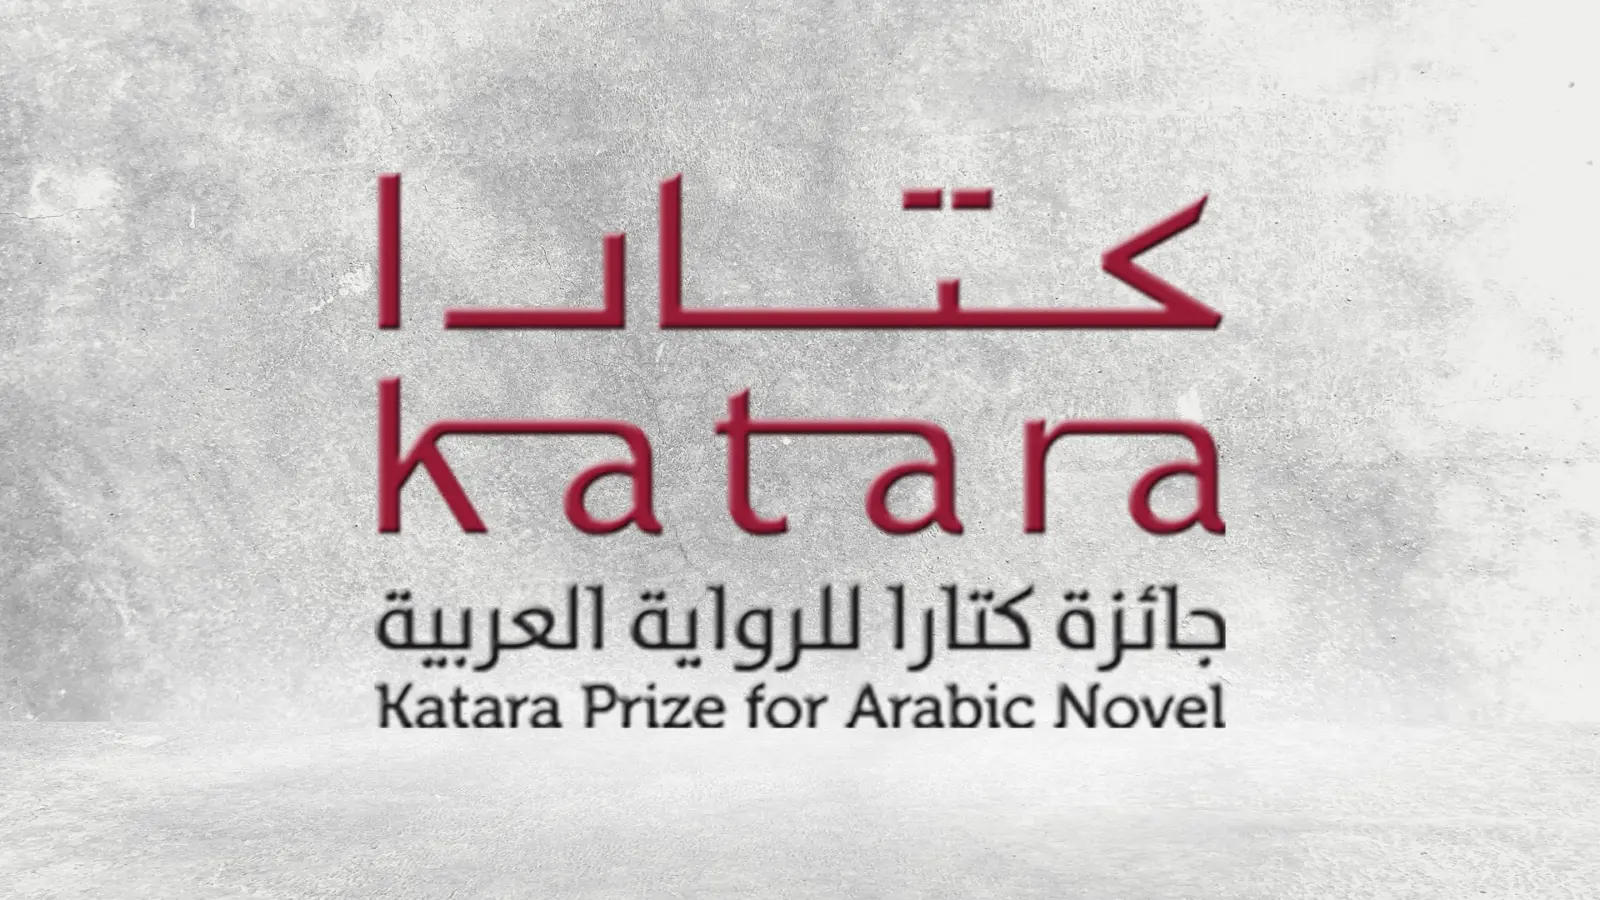 تحديد قائمة الـ18 لجائزة "كتارا" للرواية العربية